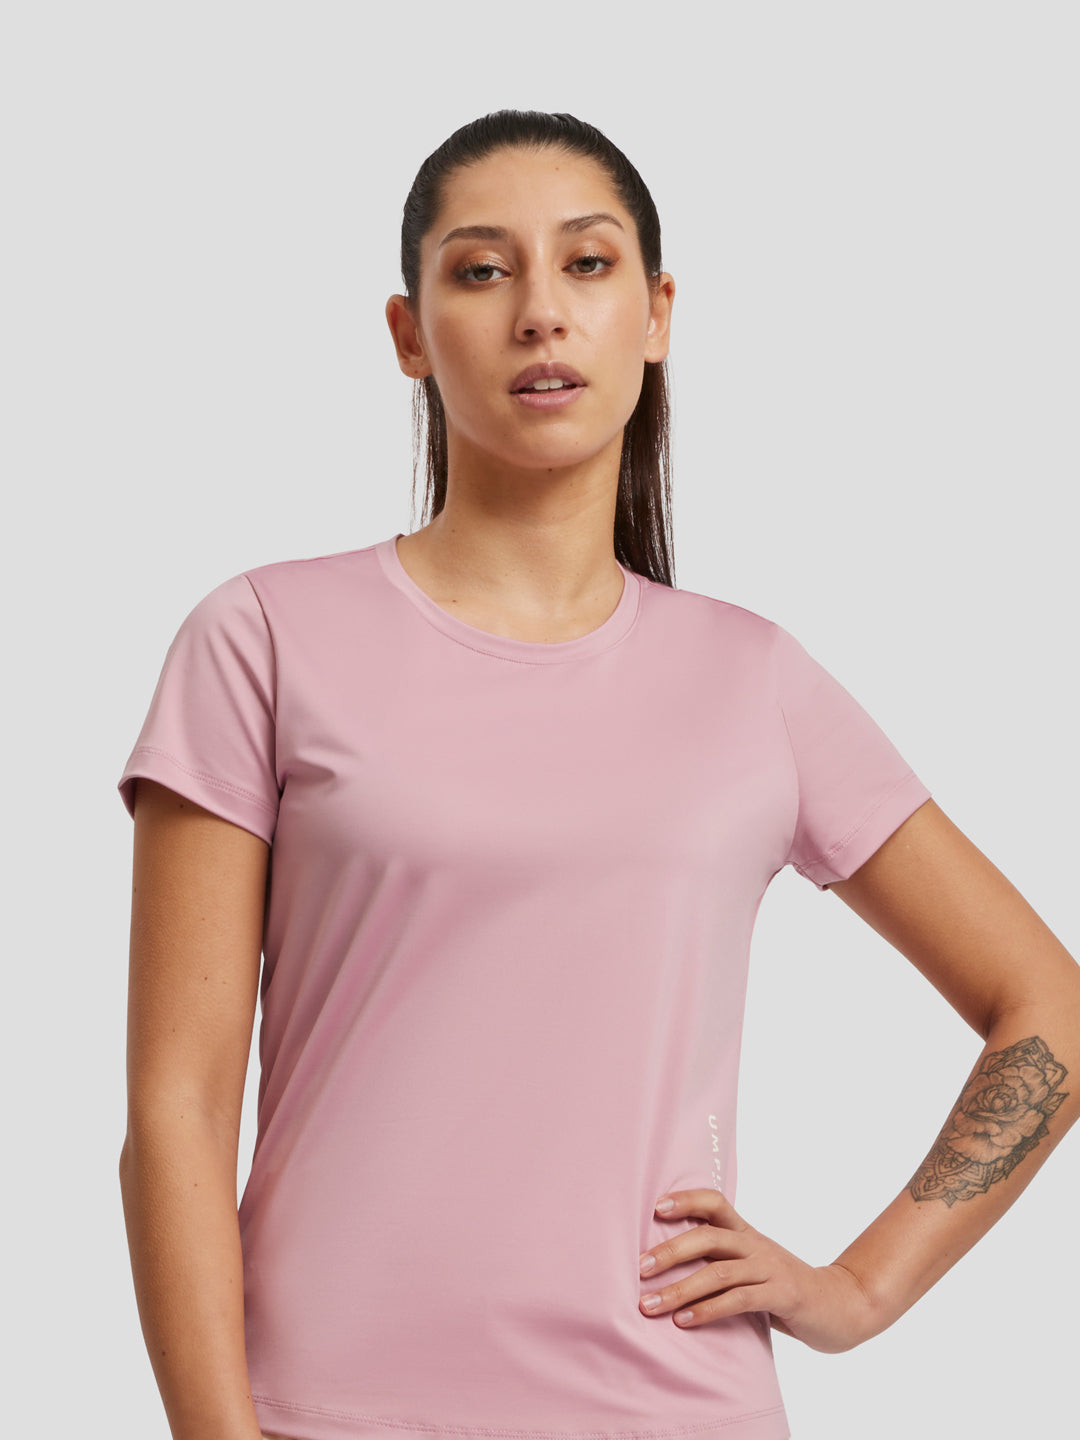 2022 Head tennis t-shirt clothing women short sleeve TIE-BREAK T-Shirt  Women sportswear fitness